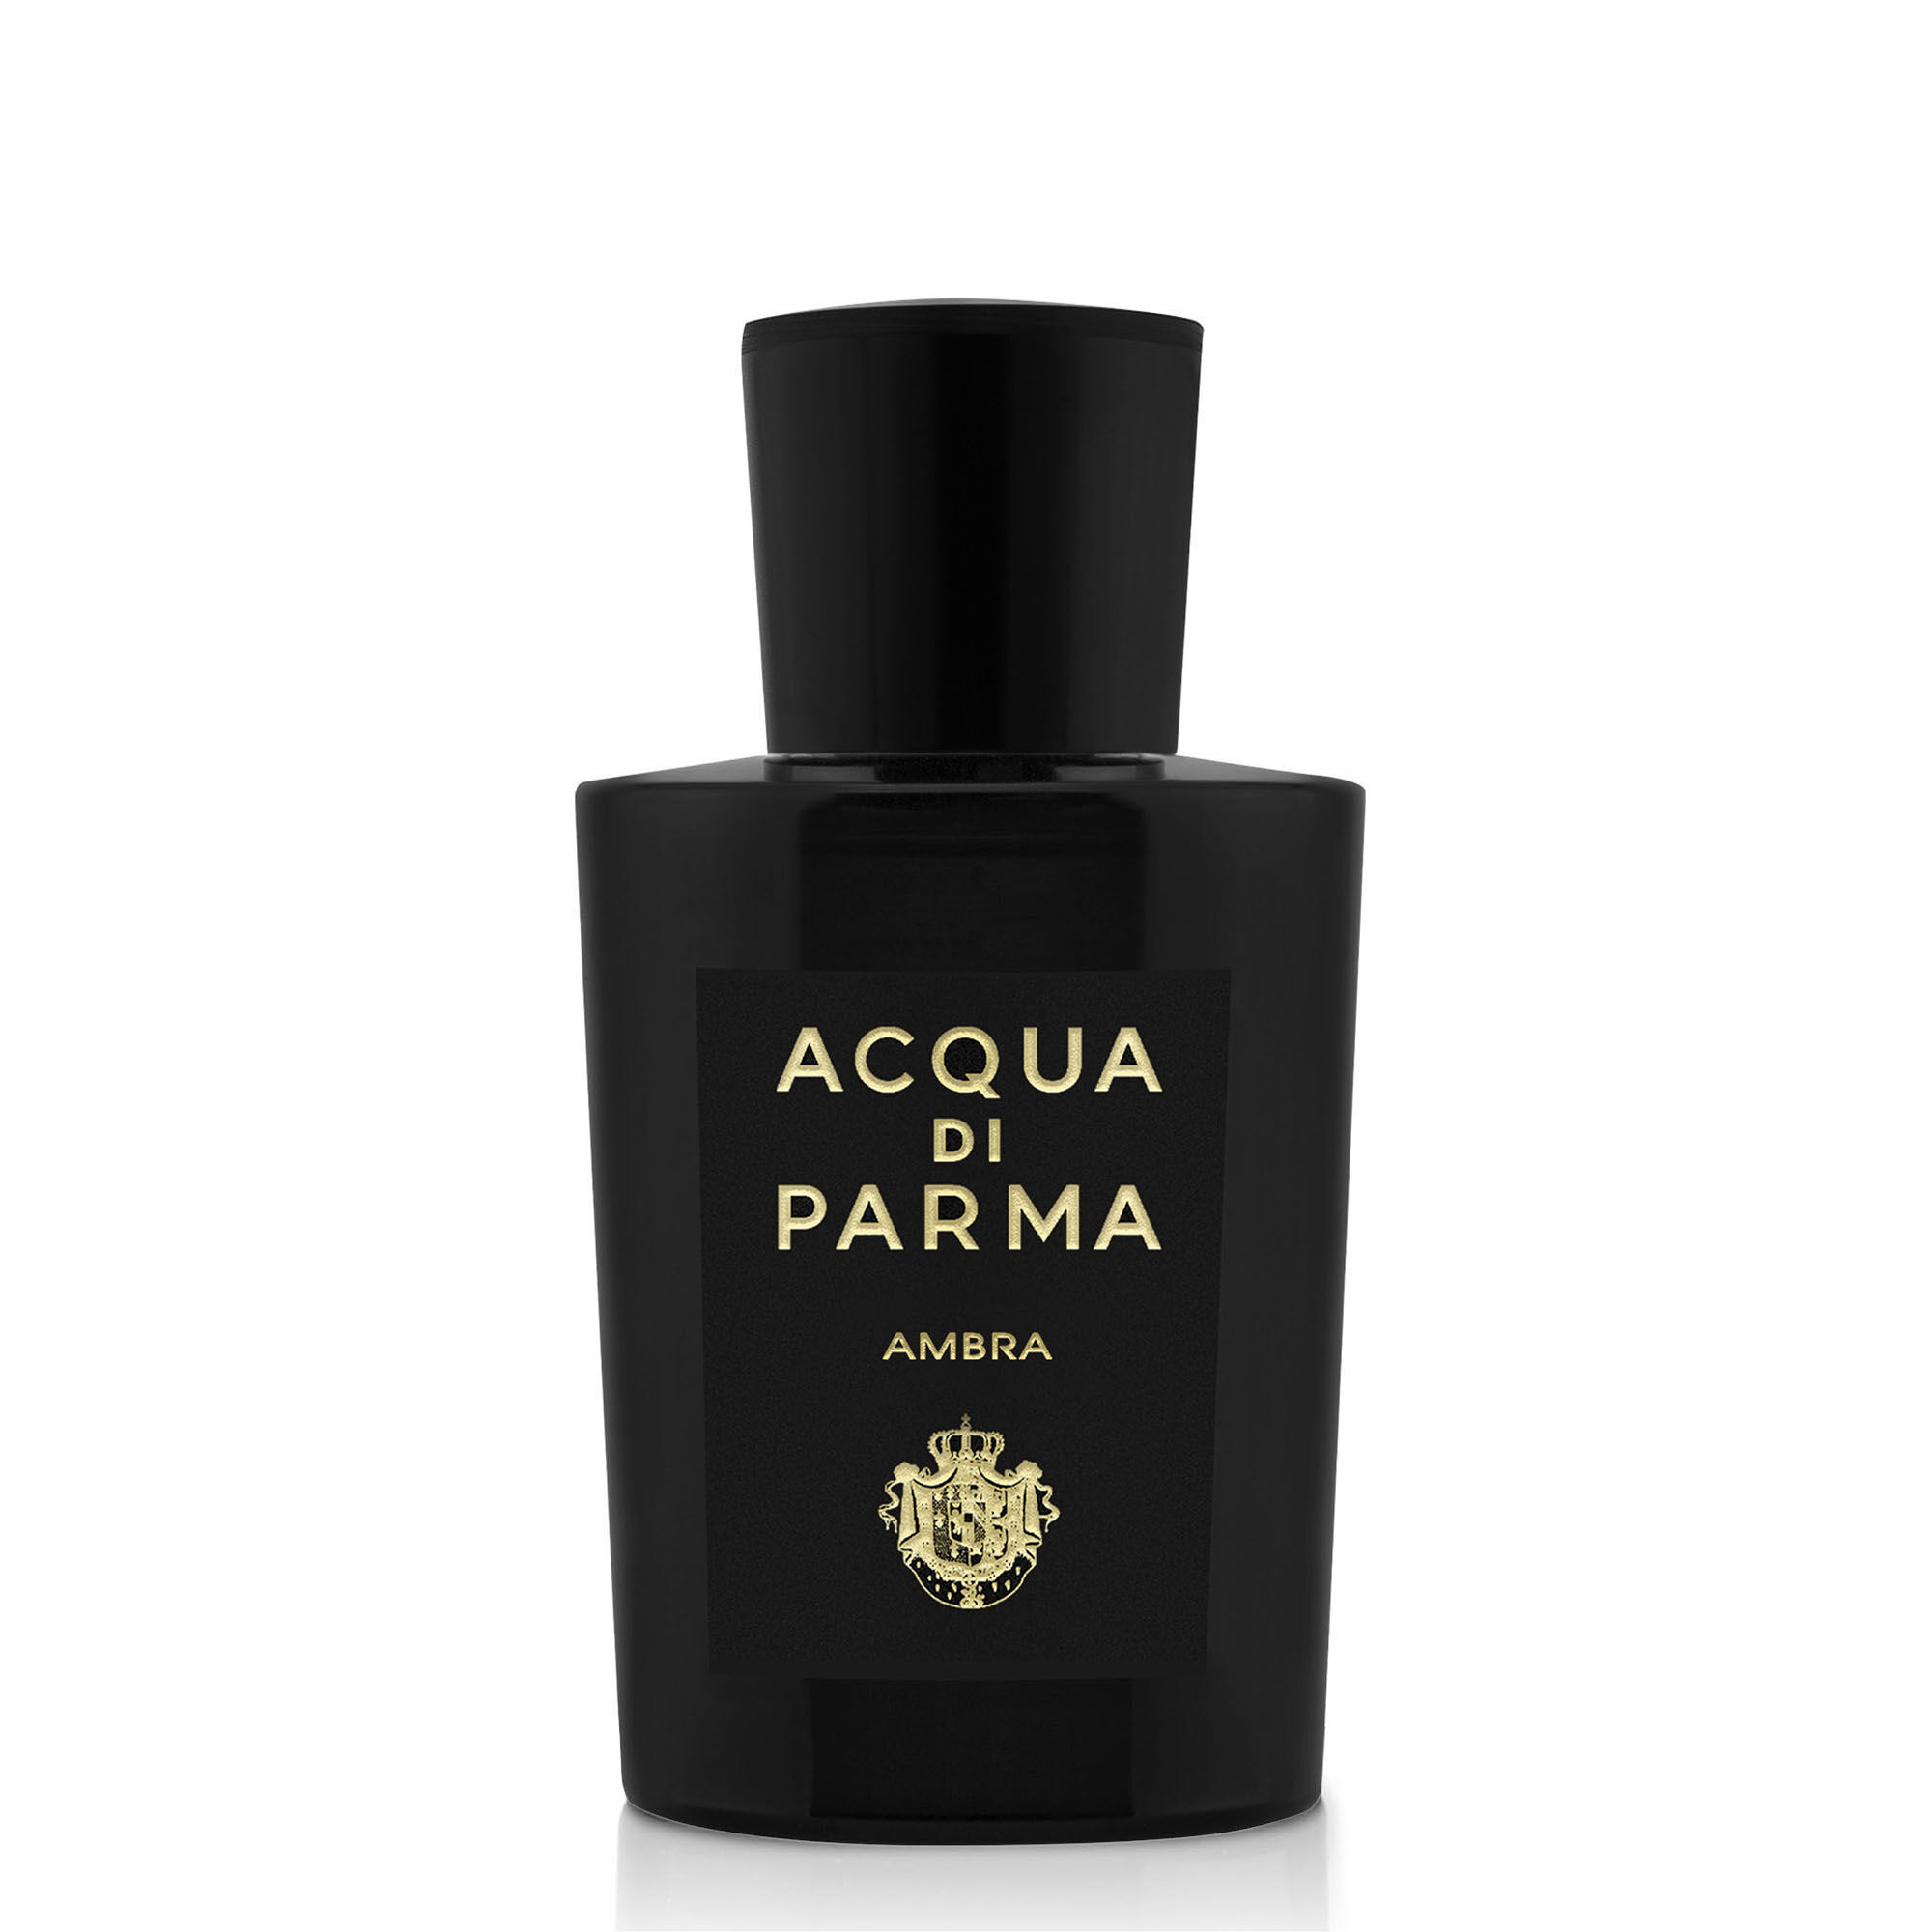 Acqua di Parma Ambra eau de parfum / 100 ml / unisex